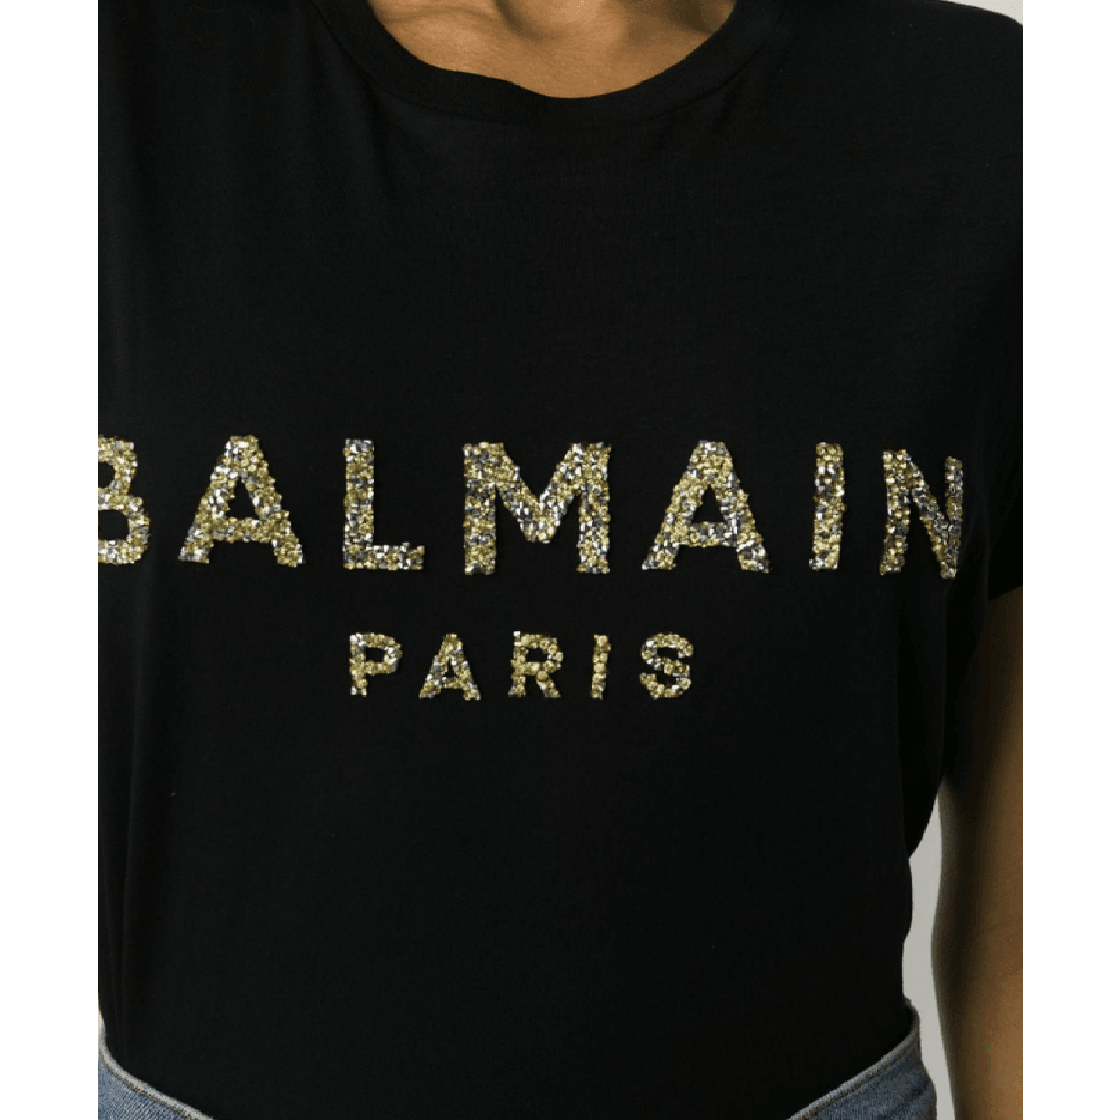 Tram Geladen Ideaal Balmain Glitter Logo Print T-Shirt$425.00